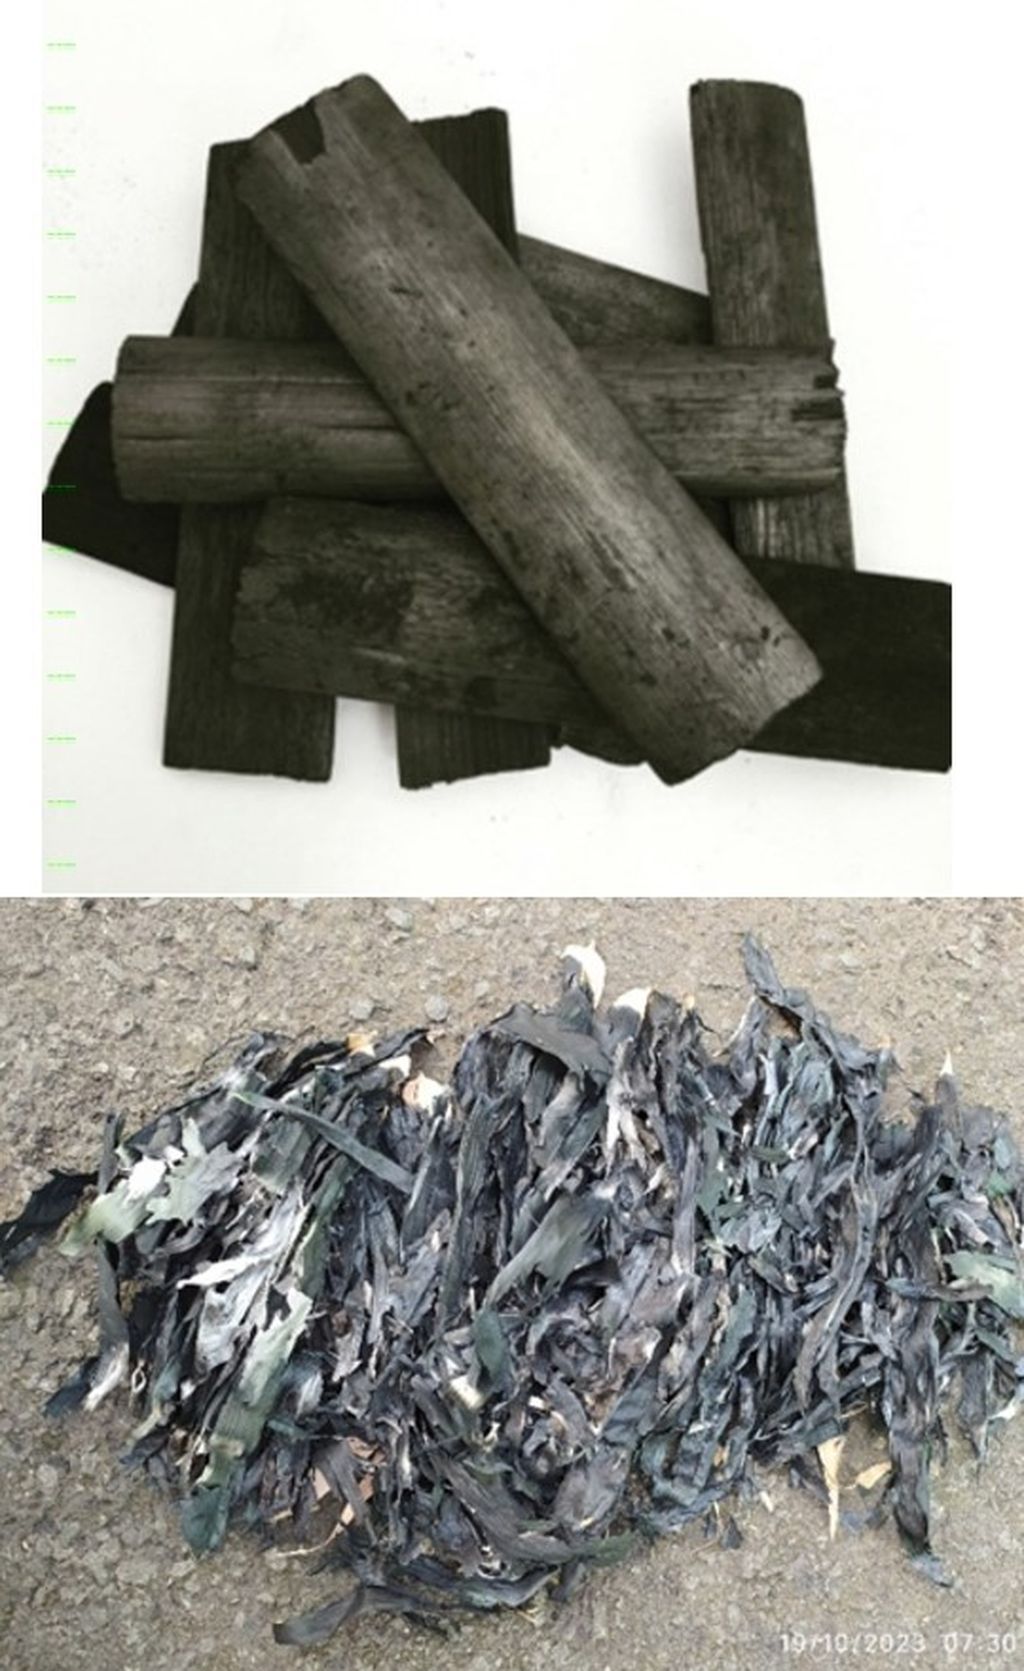 Arang batang bambu (gambar atas) dan arang dari daun bambu (gambar bawah) sebagai <i>biochar </i>dan asap cair berfungsi sebagai media untuk penyuburan tanah, terutama tanah tandus dan gersang.